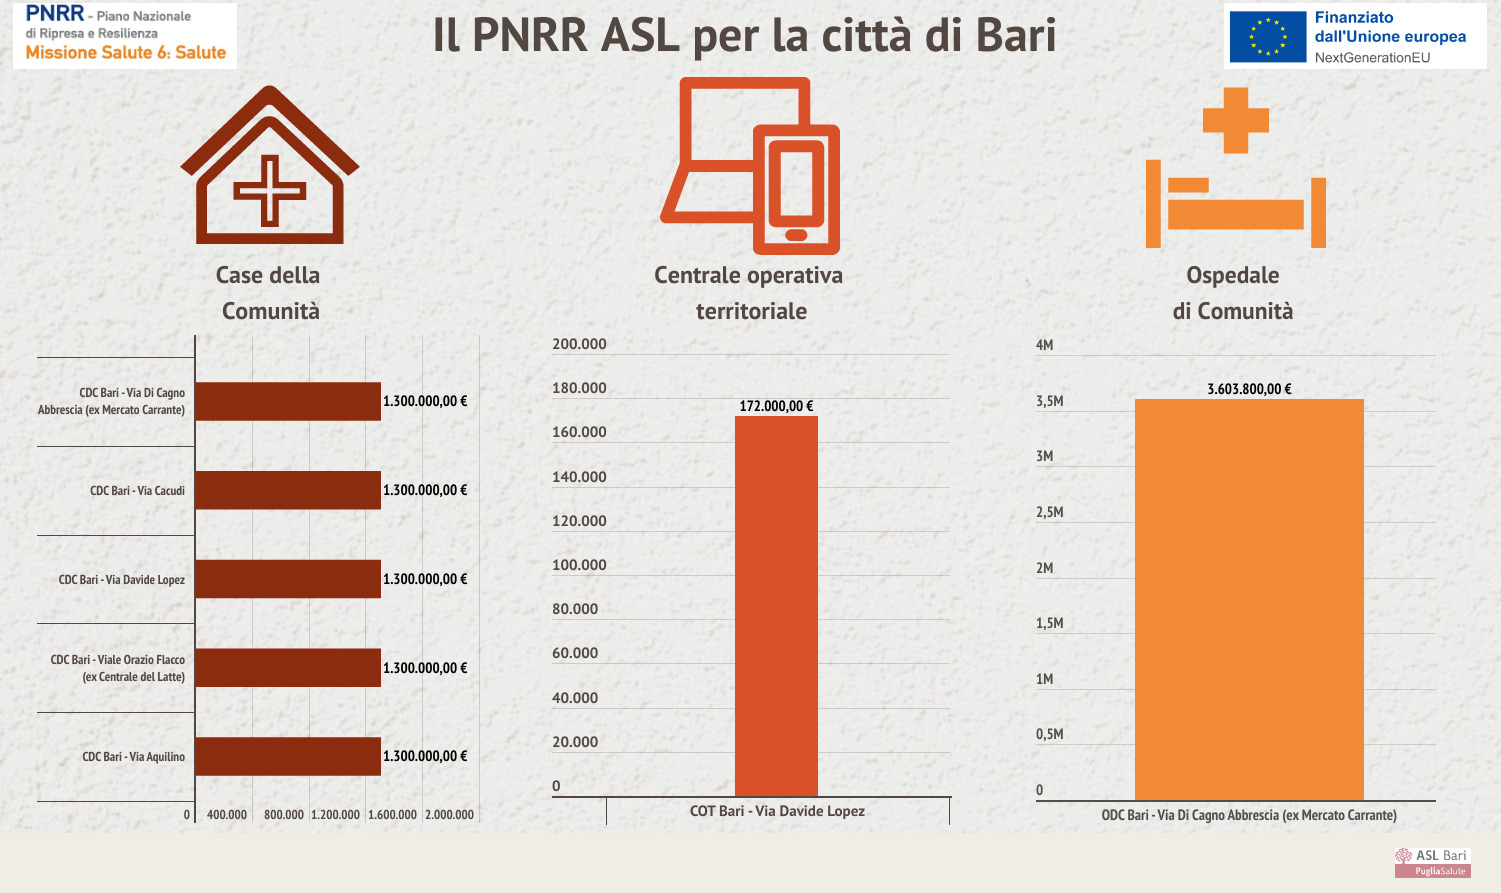 Galleria PNRR, il piano della ASL per la città di Bari: 60 milioni per potenziare territorio e ospedali - Diapositiva 12 di 15